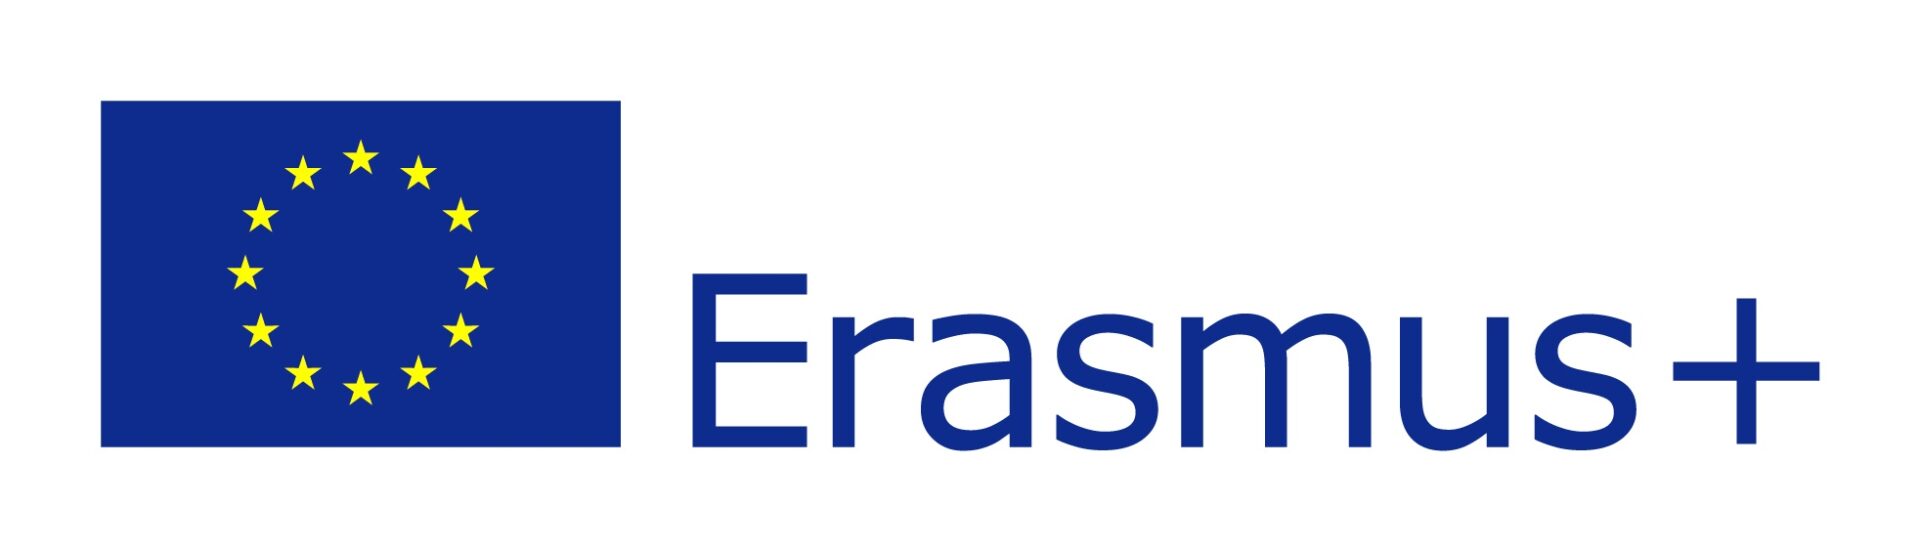 Facebook’o konkursas apie Europos Savanorių Tarnybą bei Europos Sąjungos programą Erasmus+